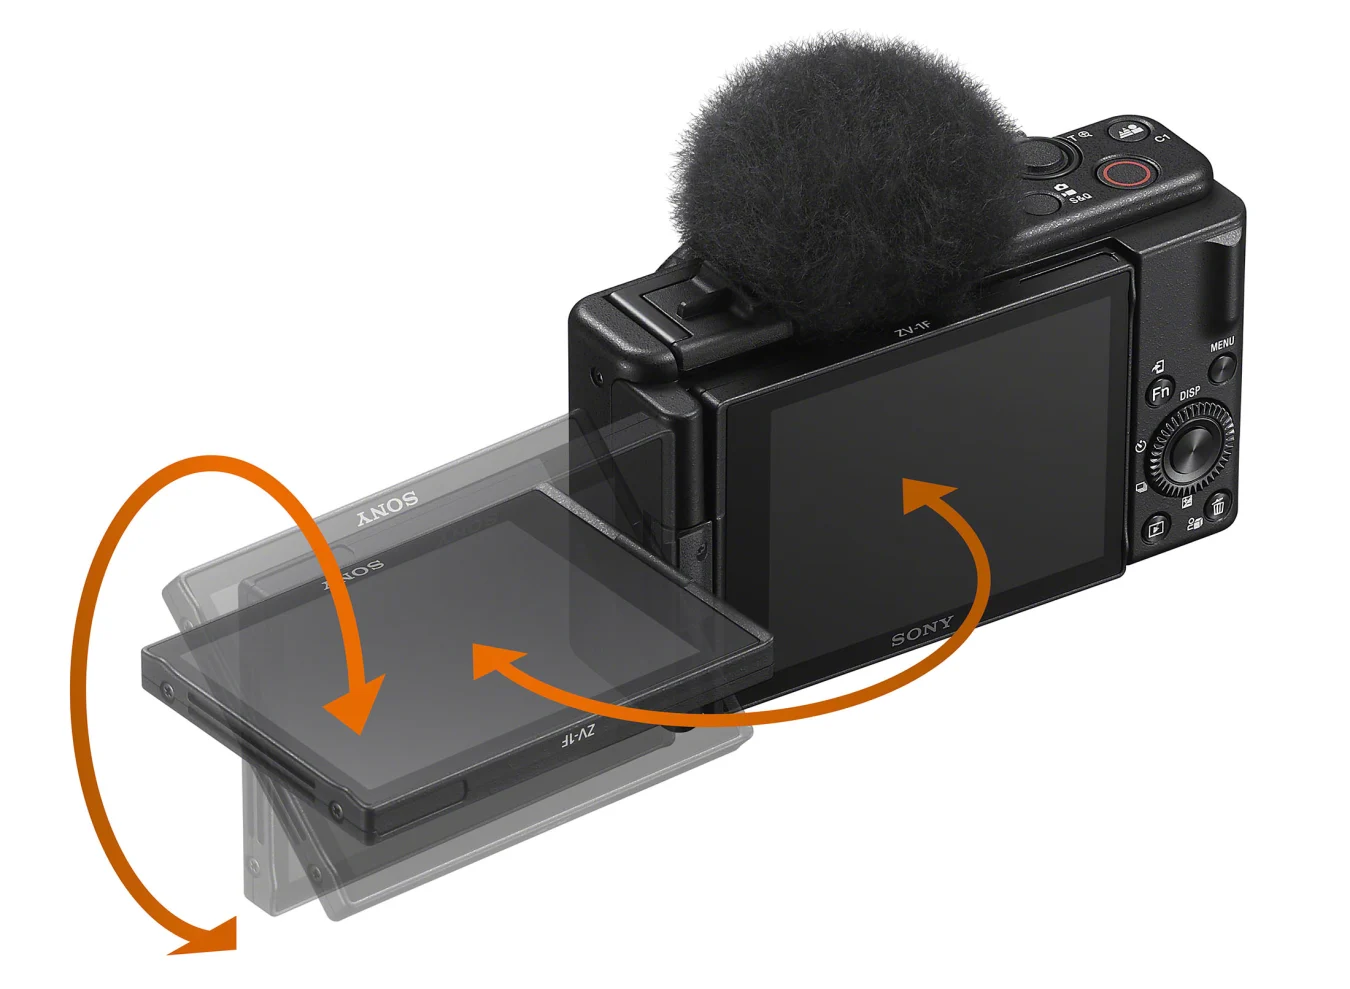 Sony ZV-1F – компактная камера для видеоблогеров по цене $500 (самая доступная версия в линейке)